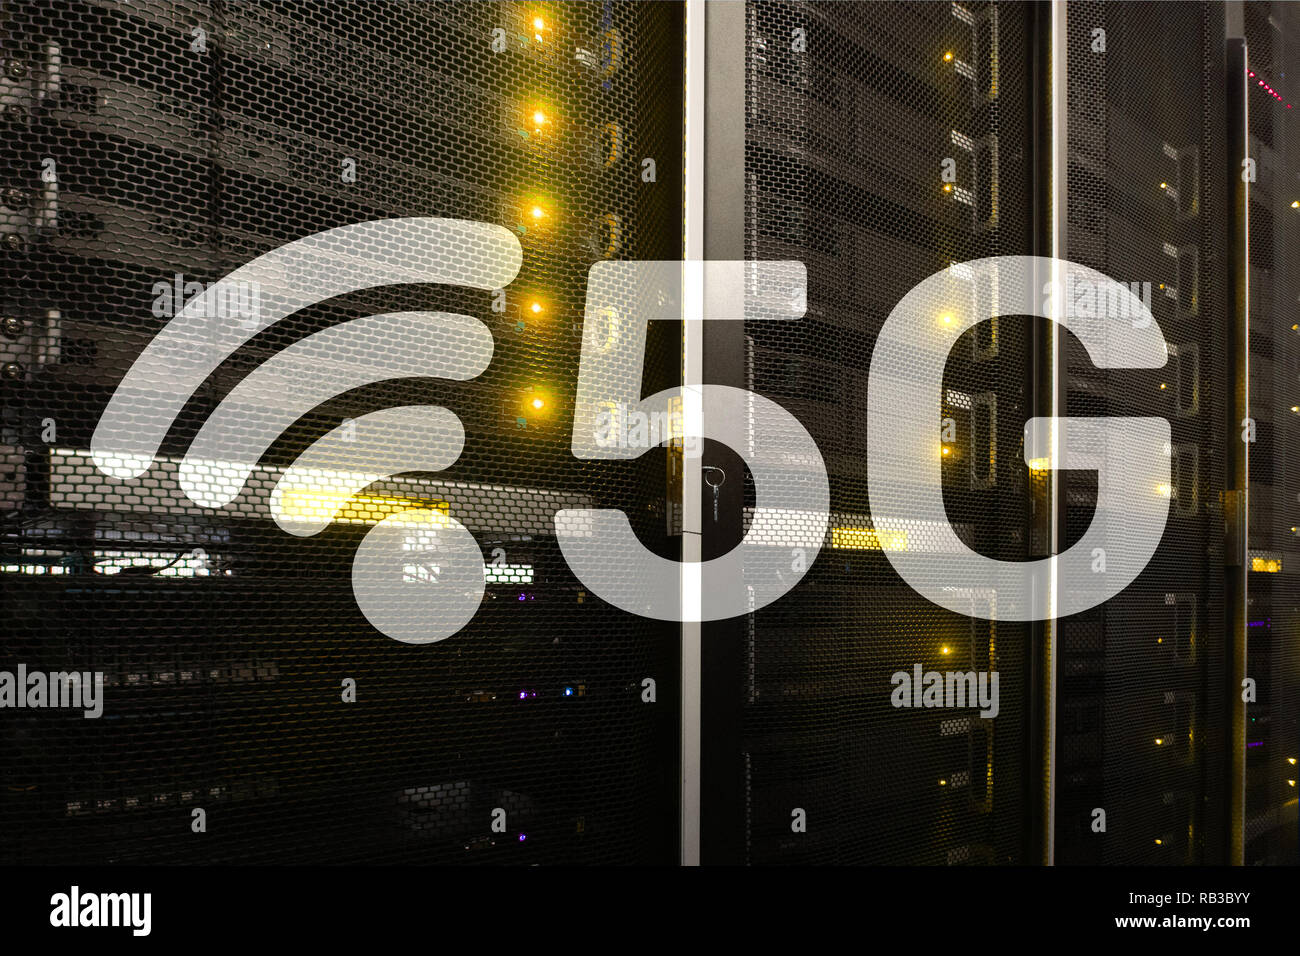 5G La connexion internet sans fil rapide des technologies mobiles de communication concept. Banque D'Images